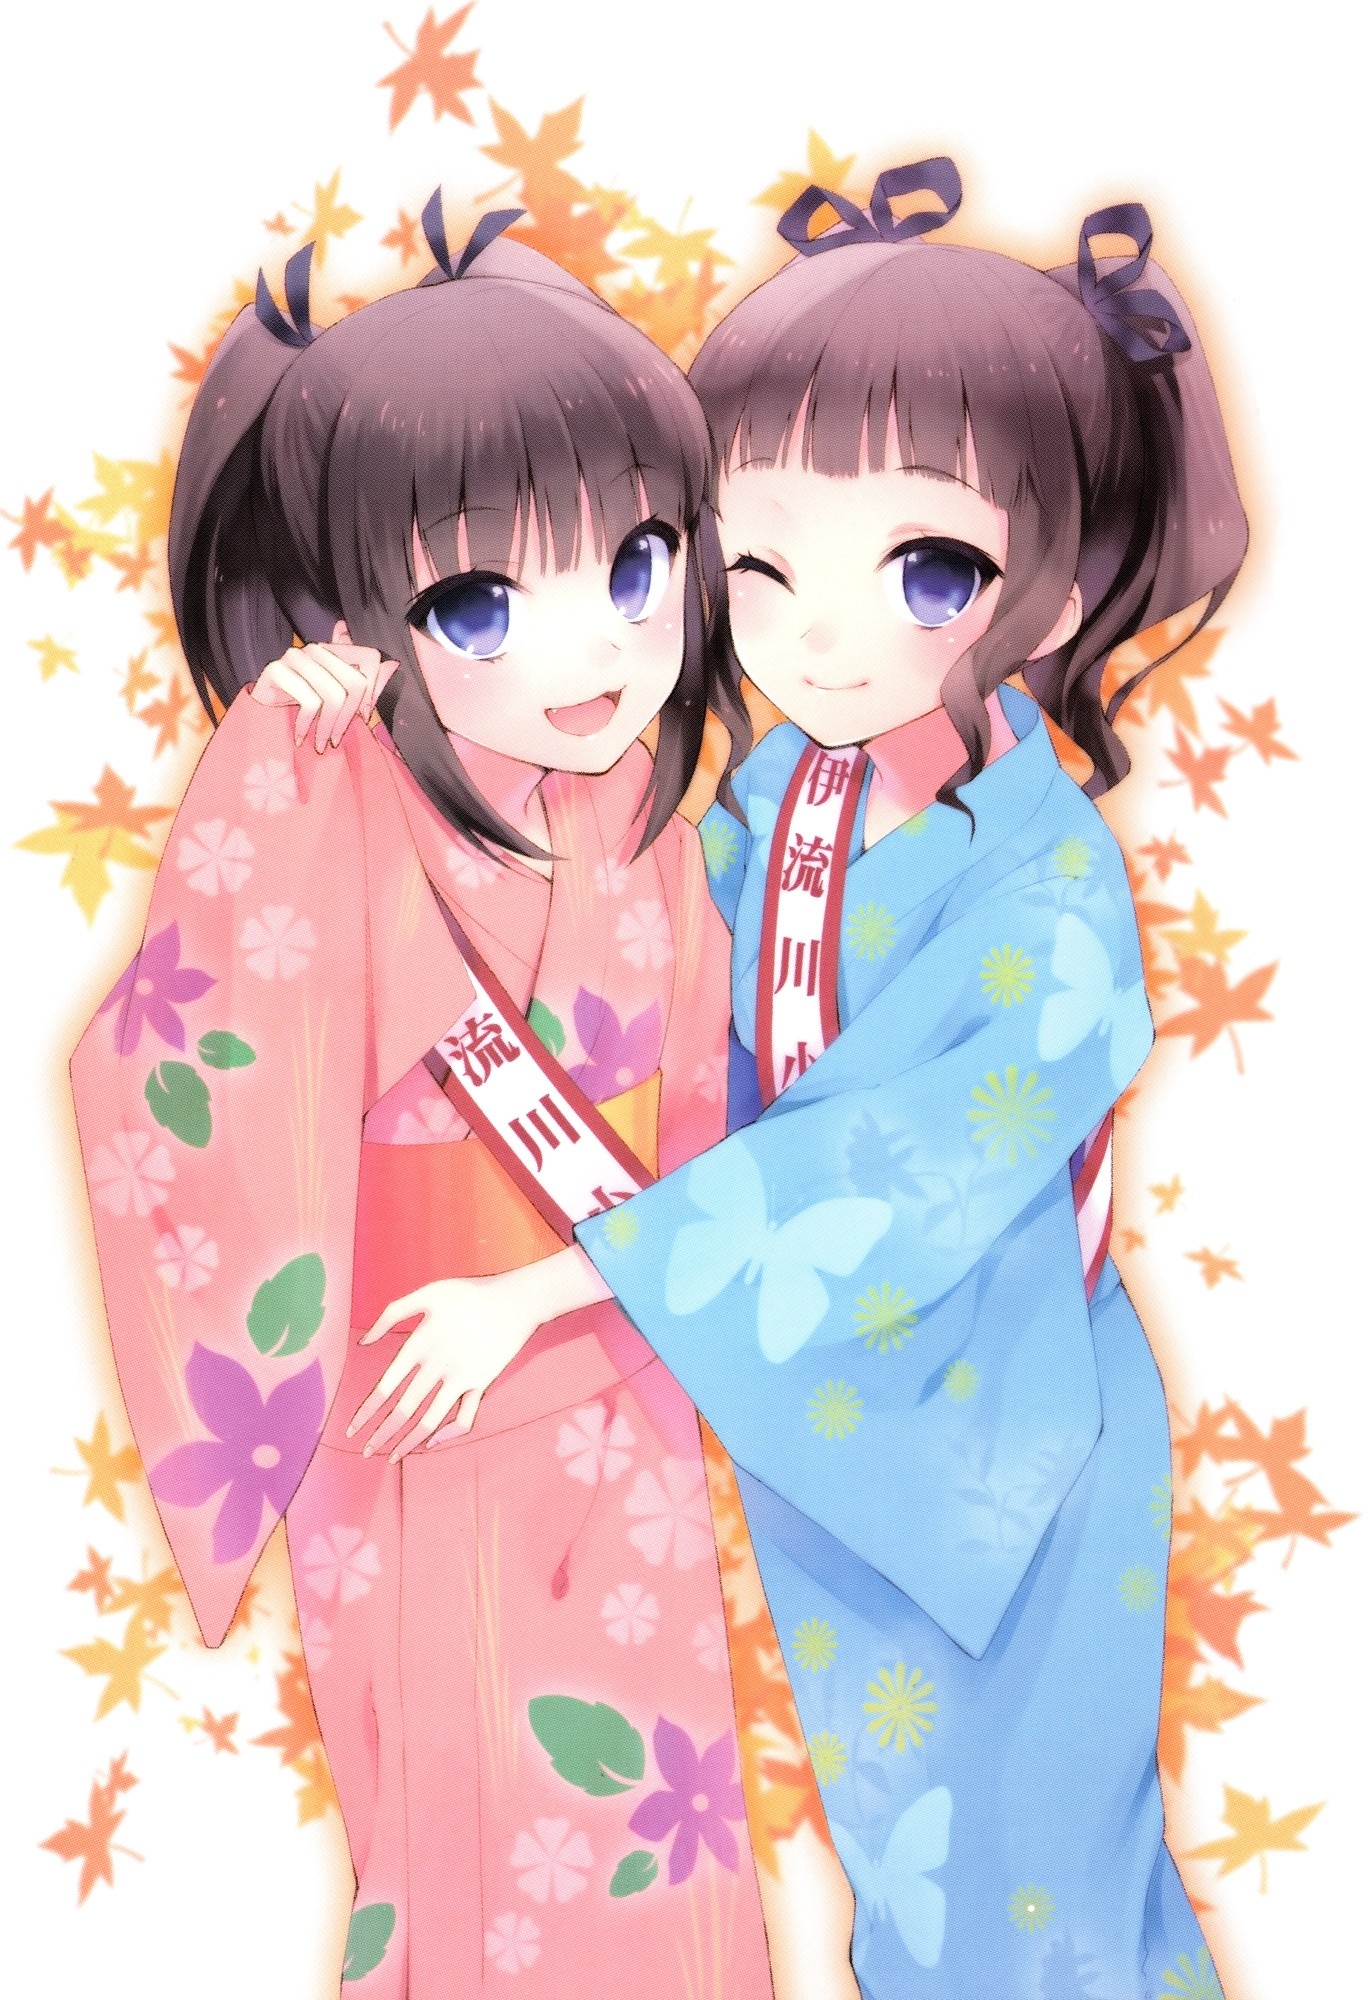 Anime 1372x2000 anime hugging kimono